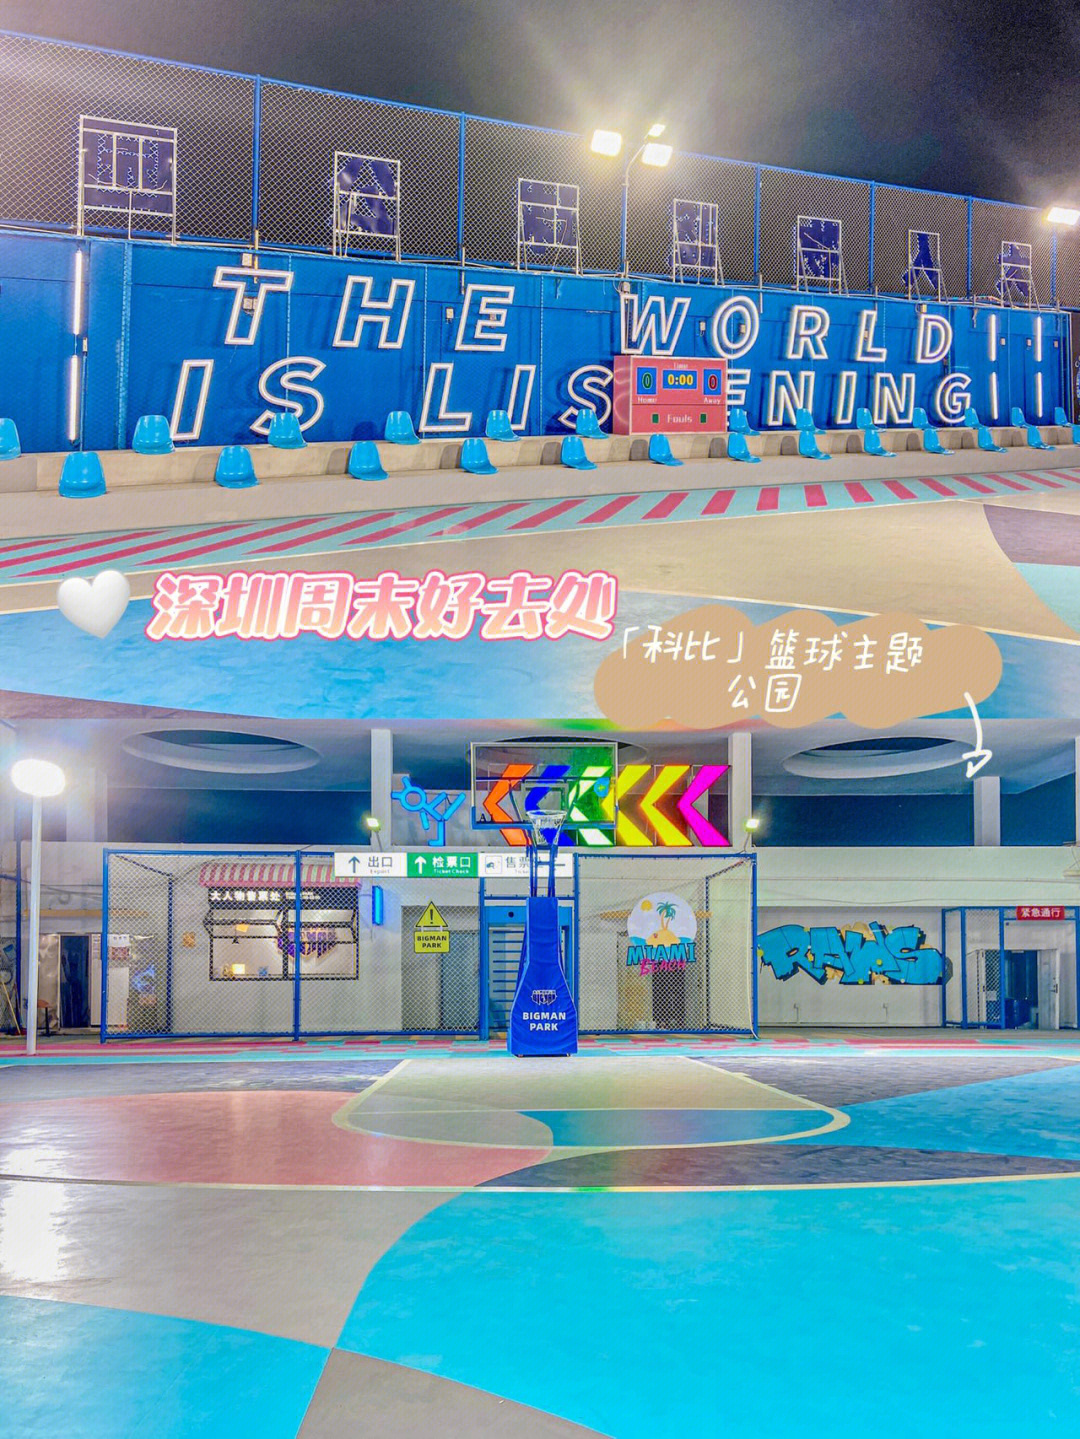 这是深圳首家以街球文化为主题的篮球公园·场地面积超大,在这打球好